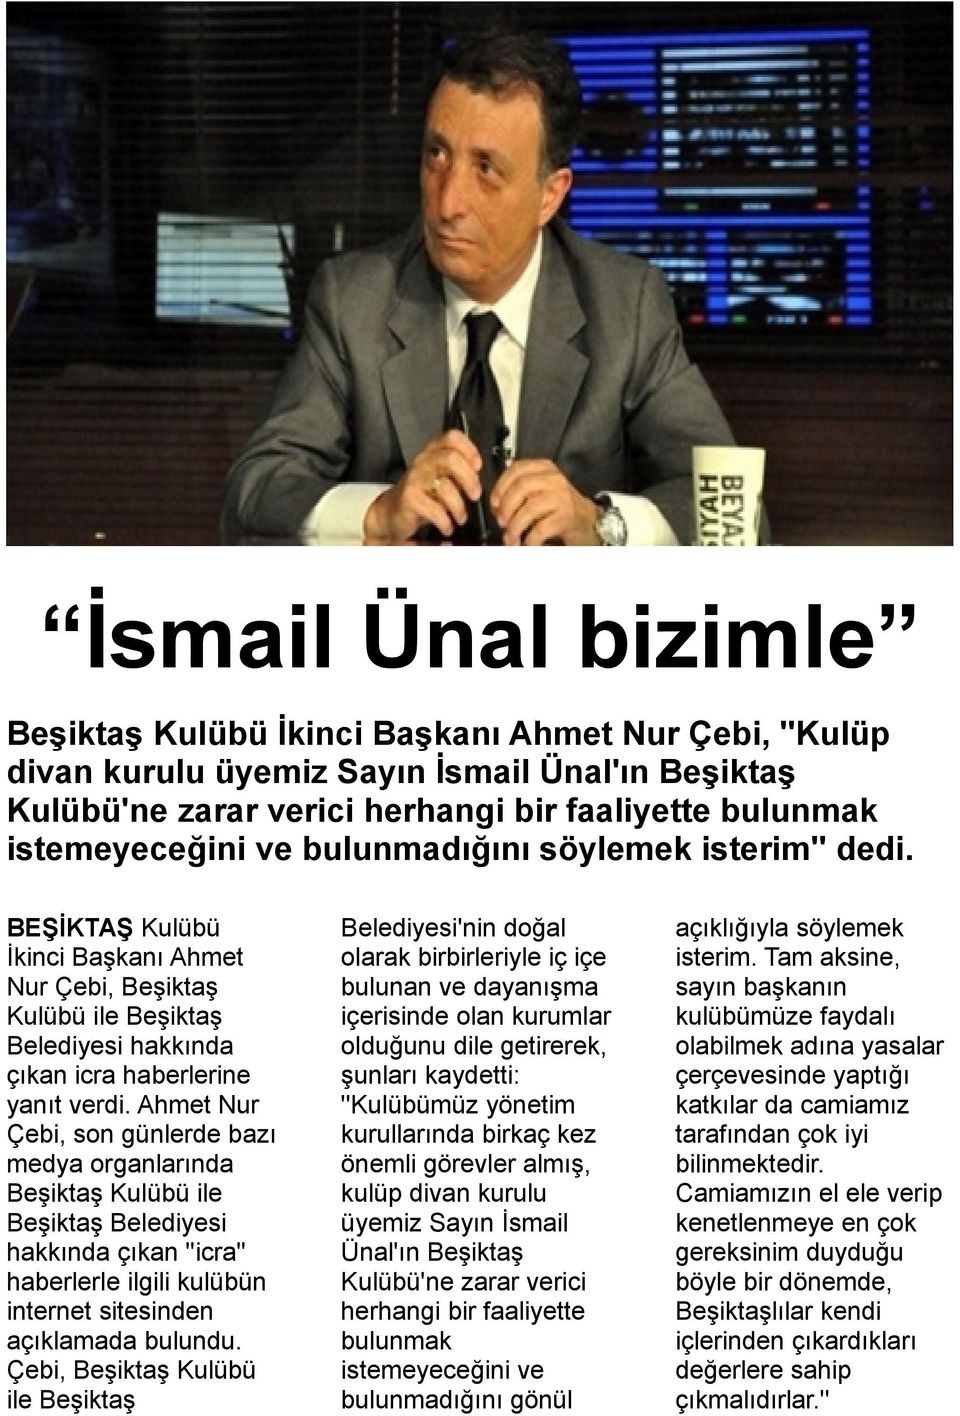 Ahmet Nur Çebi, son günlerde bazı medya organlarında Beşiktaş Kulübü ile Beşiktaş Belediyesi hakkında çıkan ''icra'' haberlerle ilgili kulübün internet sitesinden açıklamada bulundu.